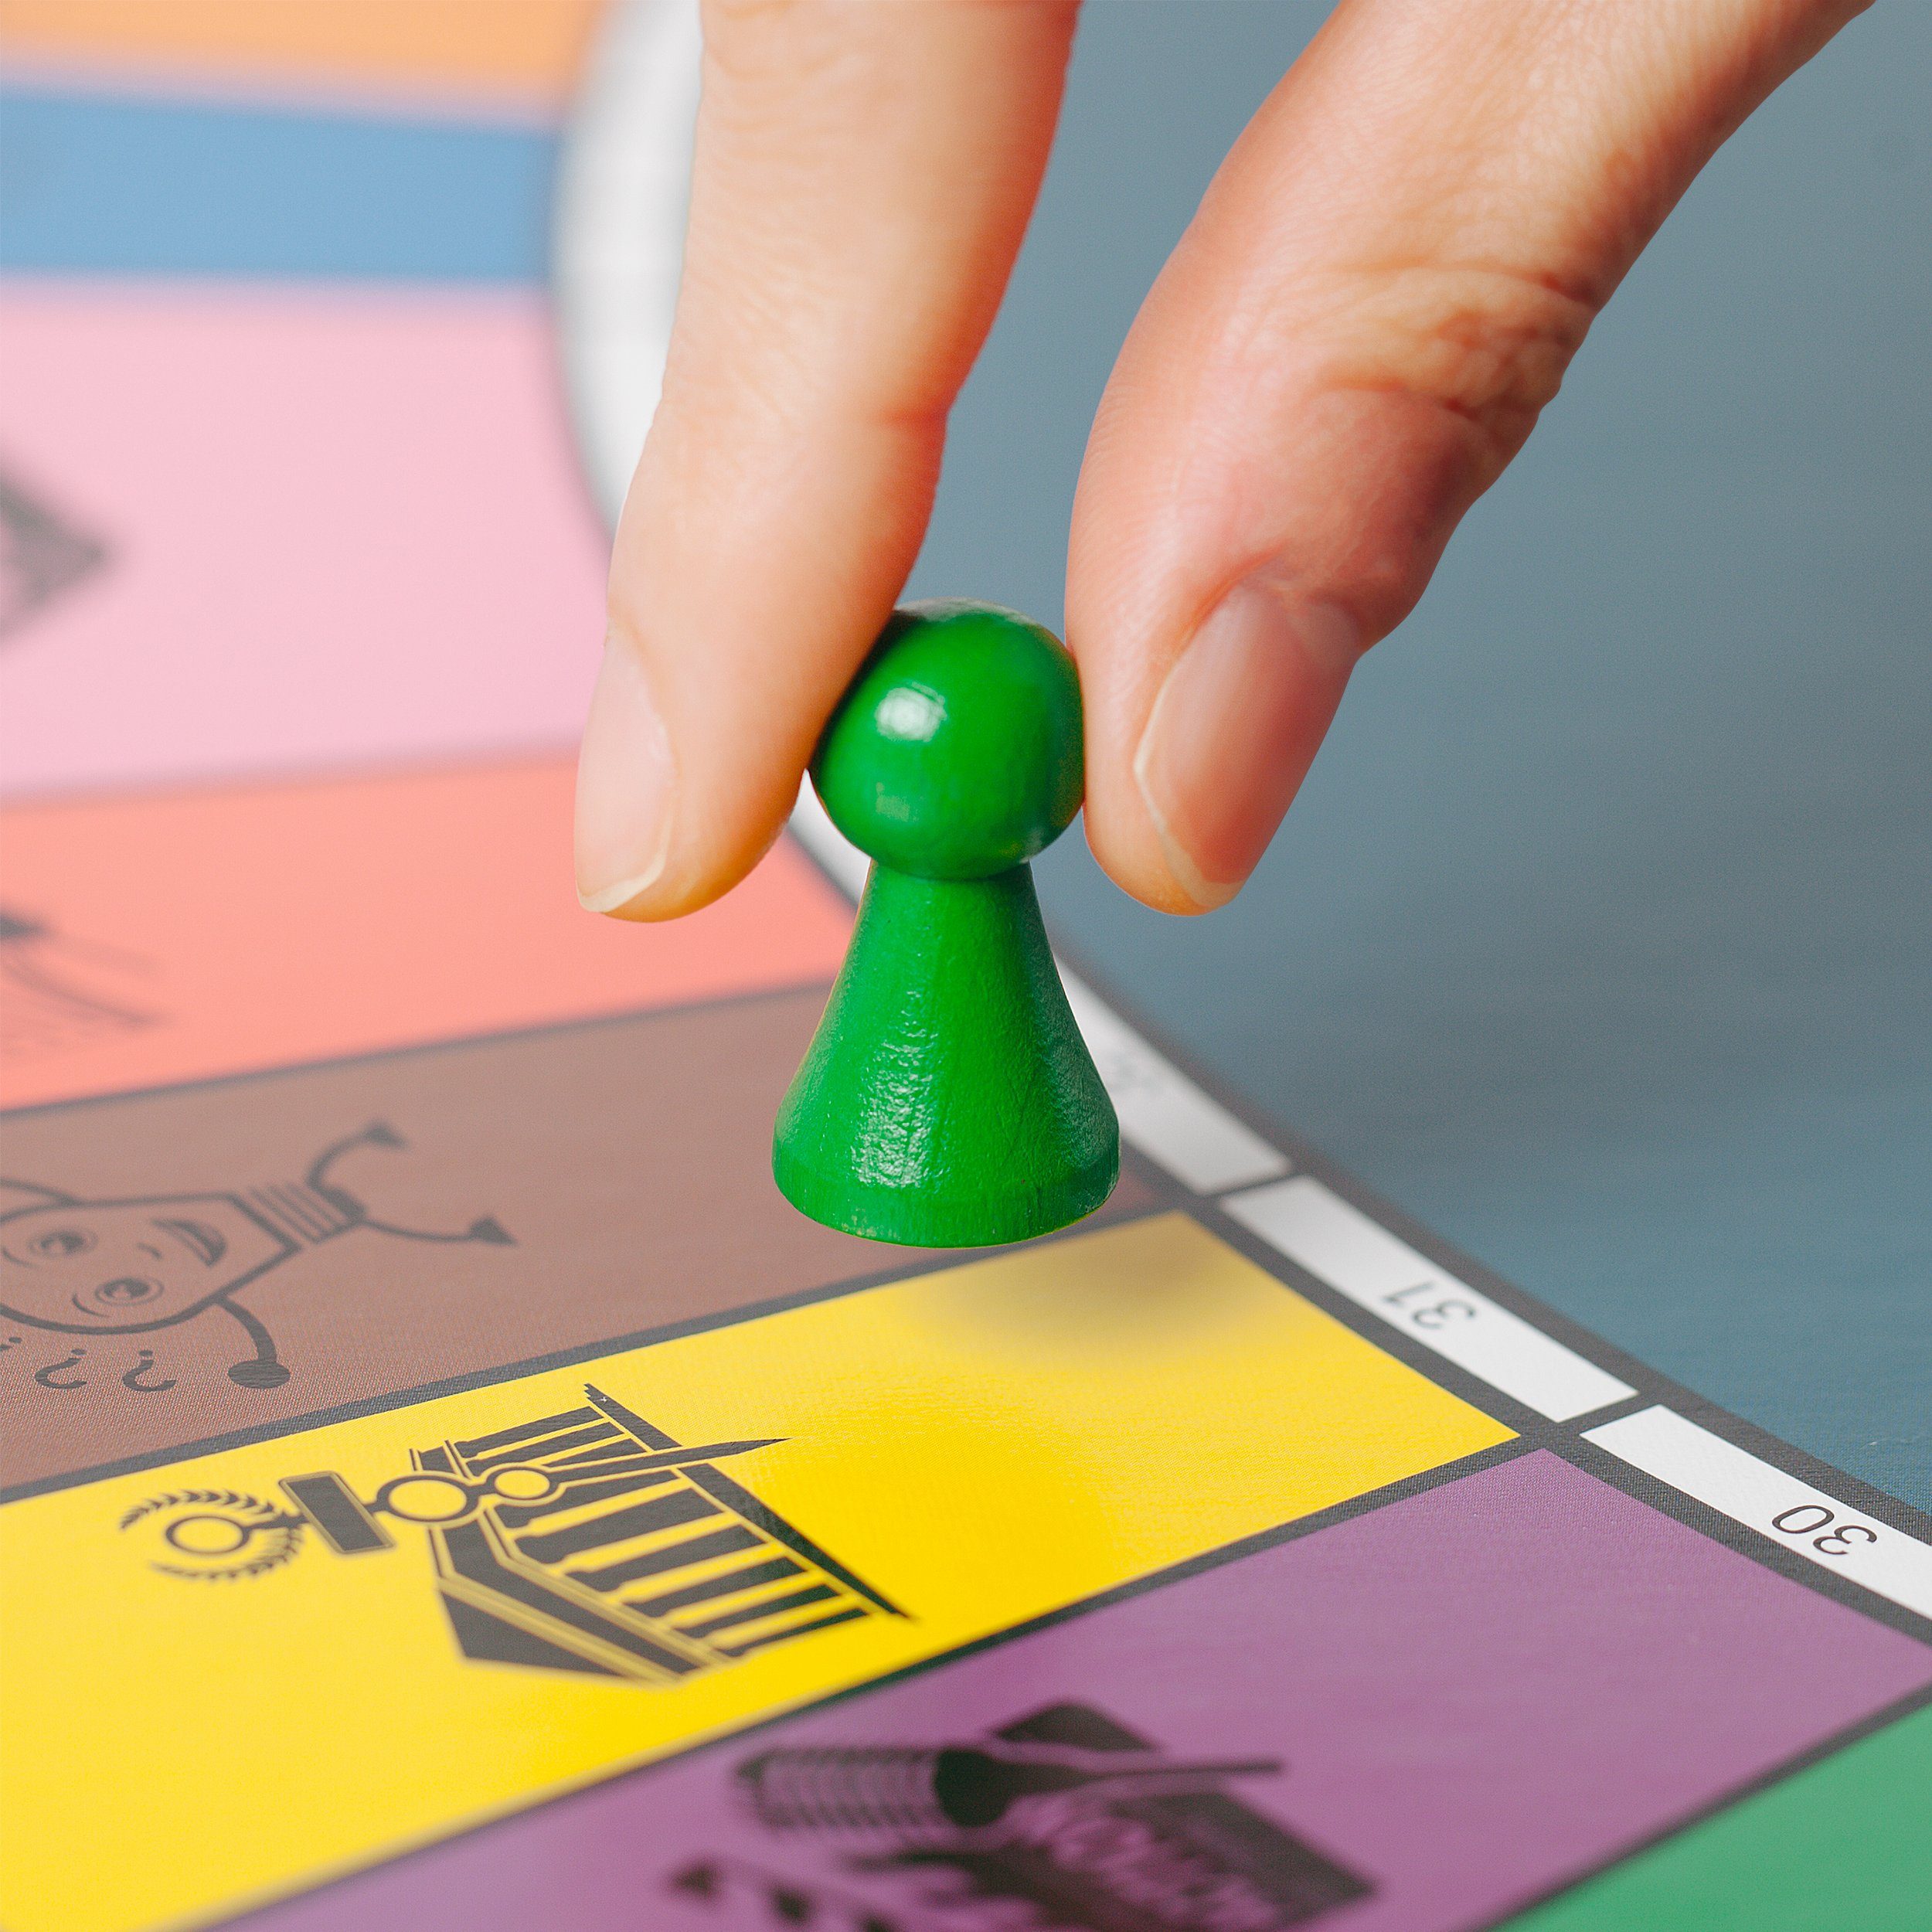 Wissens-, Frosch mit Das Android App Spiel, ALLESWISSER Alleswisser Brettspiel Interaktives für - Familienspiel Quiz-, & iOS Natur